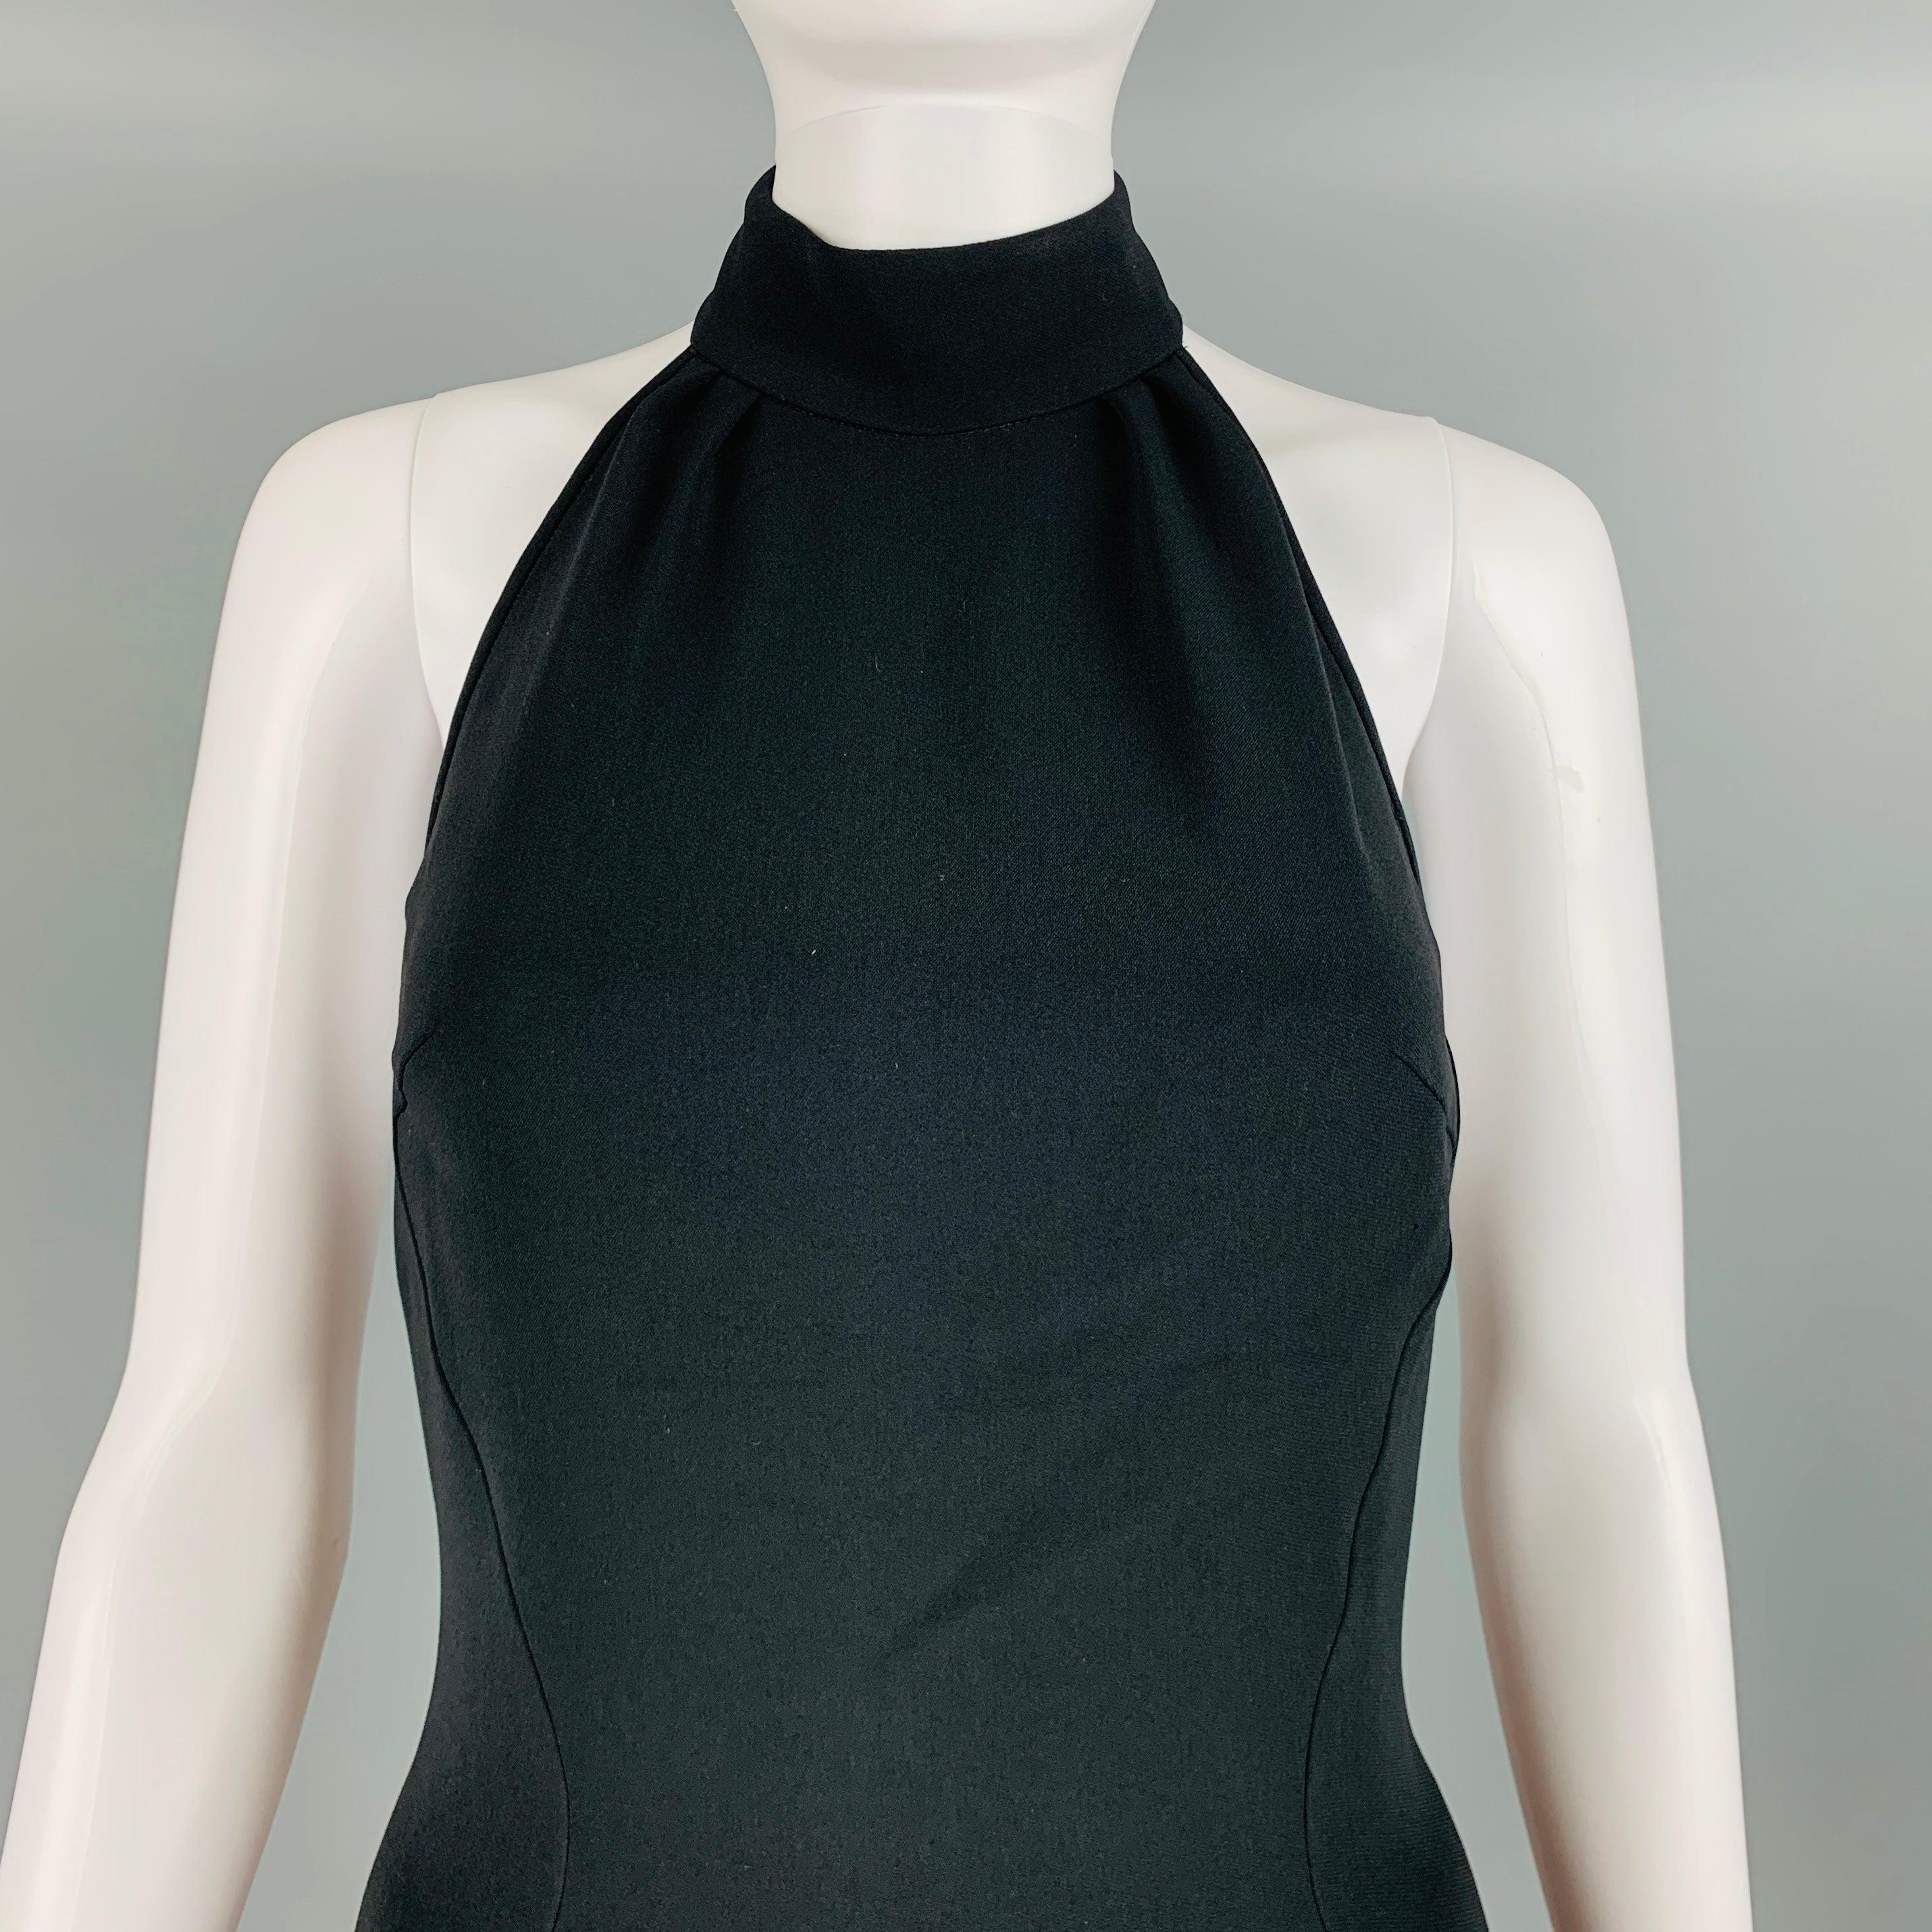 La robe STELLA McCARTNEY au-dessus du genou est réalisée dans une matière tissée en viscose mélangée noire et présente un dos nu, une jupe tulipe, un dos ouvert et une fermeture zippée sur le côté. Très bon état d'origine. Signes d'usure modérés